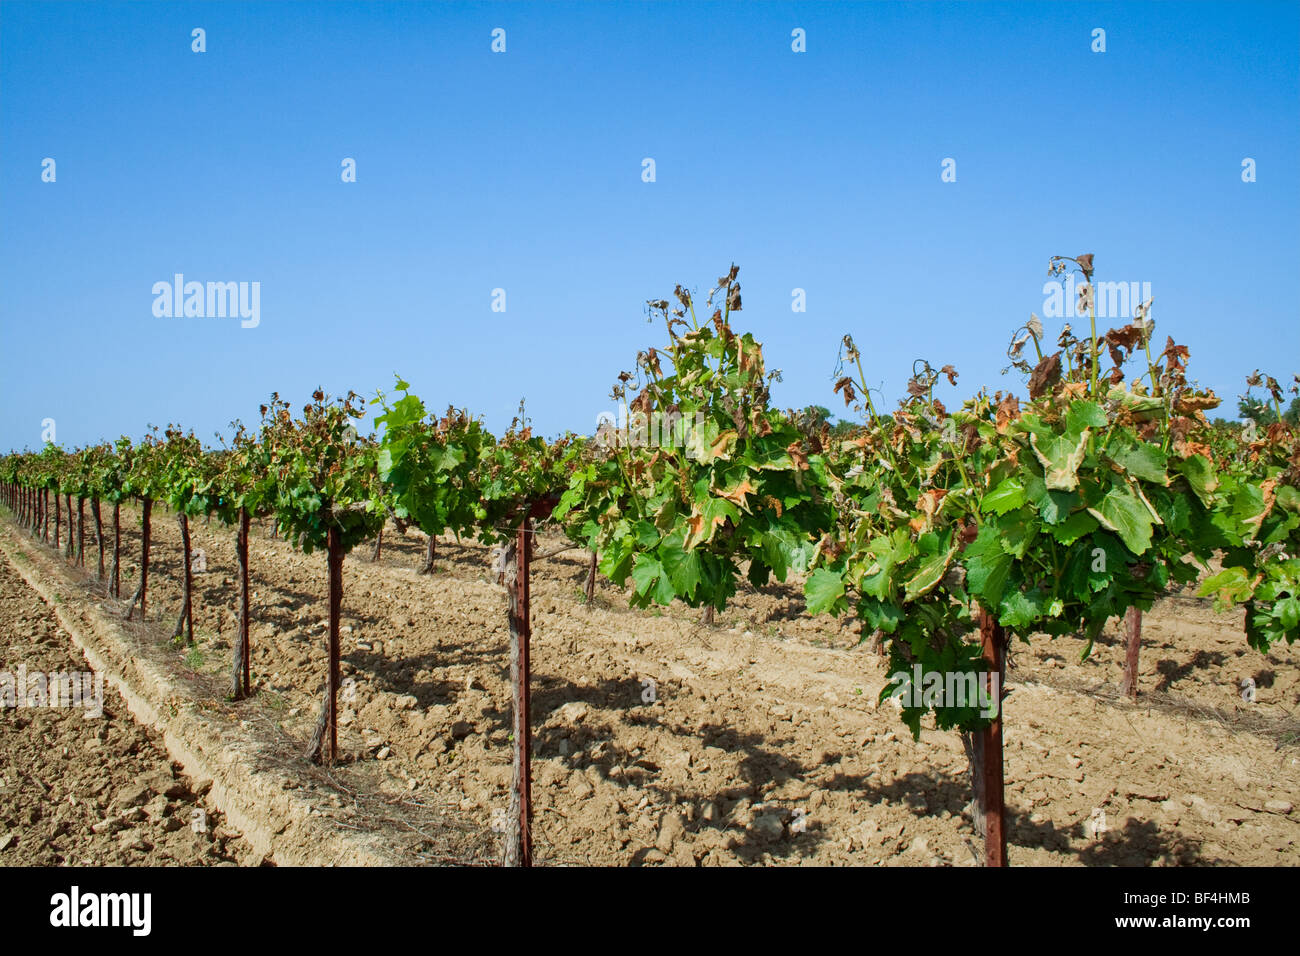 Agriculture - lourdement endommagé le feuillage de la vigne causée par un gel de printemps inhabituel / près de Orland, Californie, USA. Banque D'Images